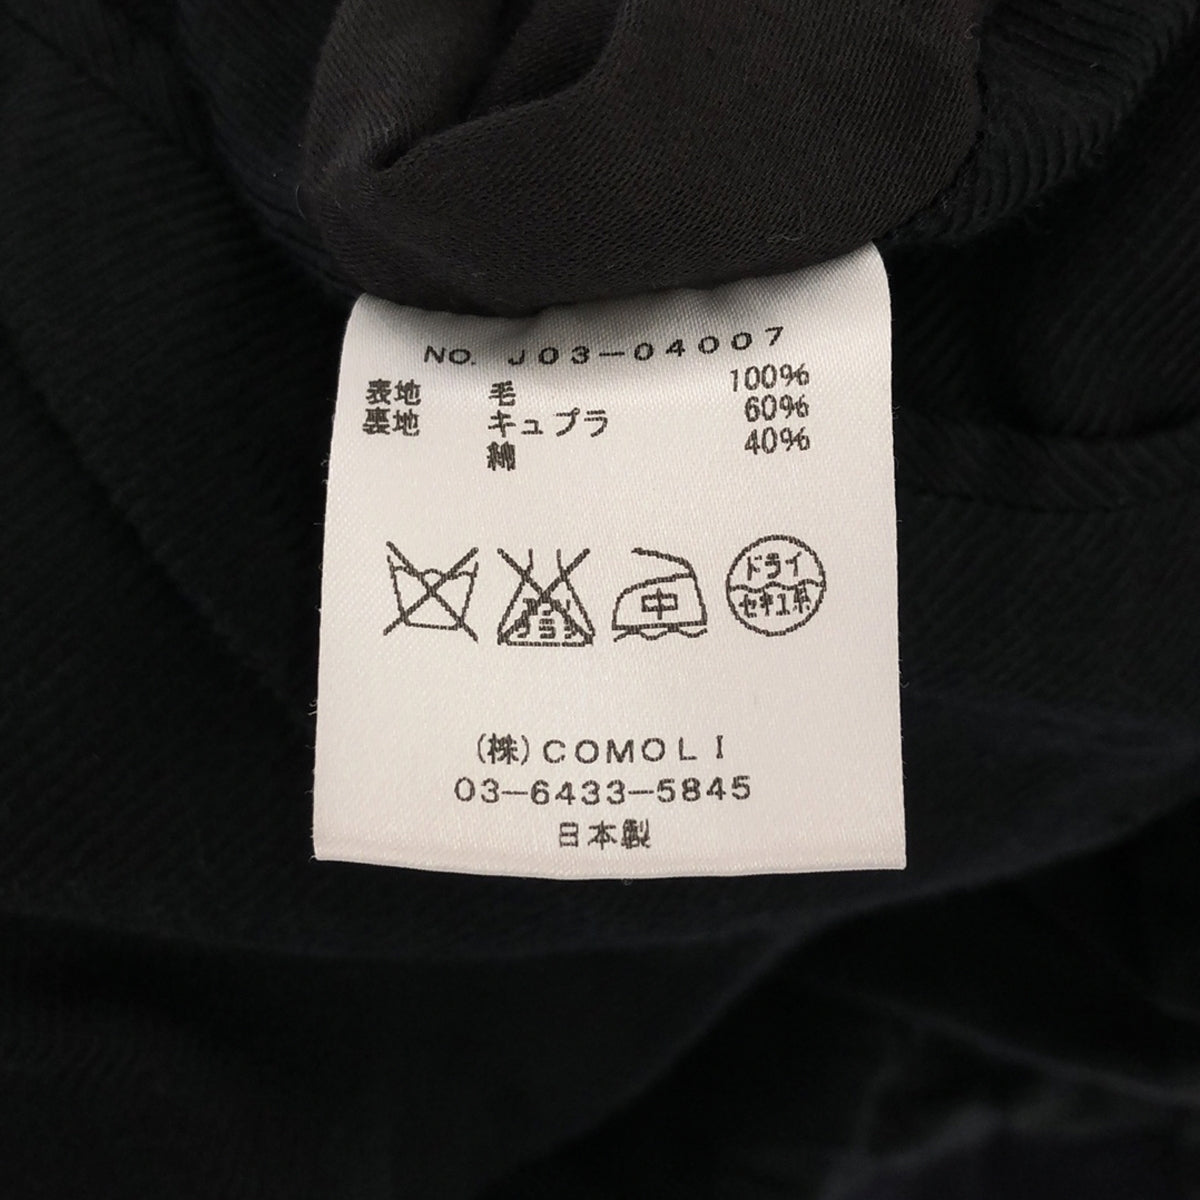 COMOLI / コモリ | キャバリーメルトンバルカラー ステンカラーコート | 2 | メンズ